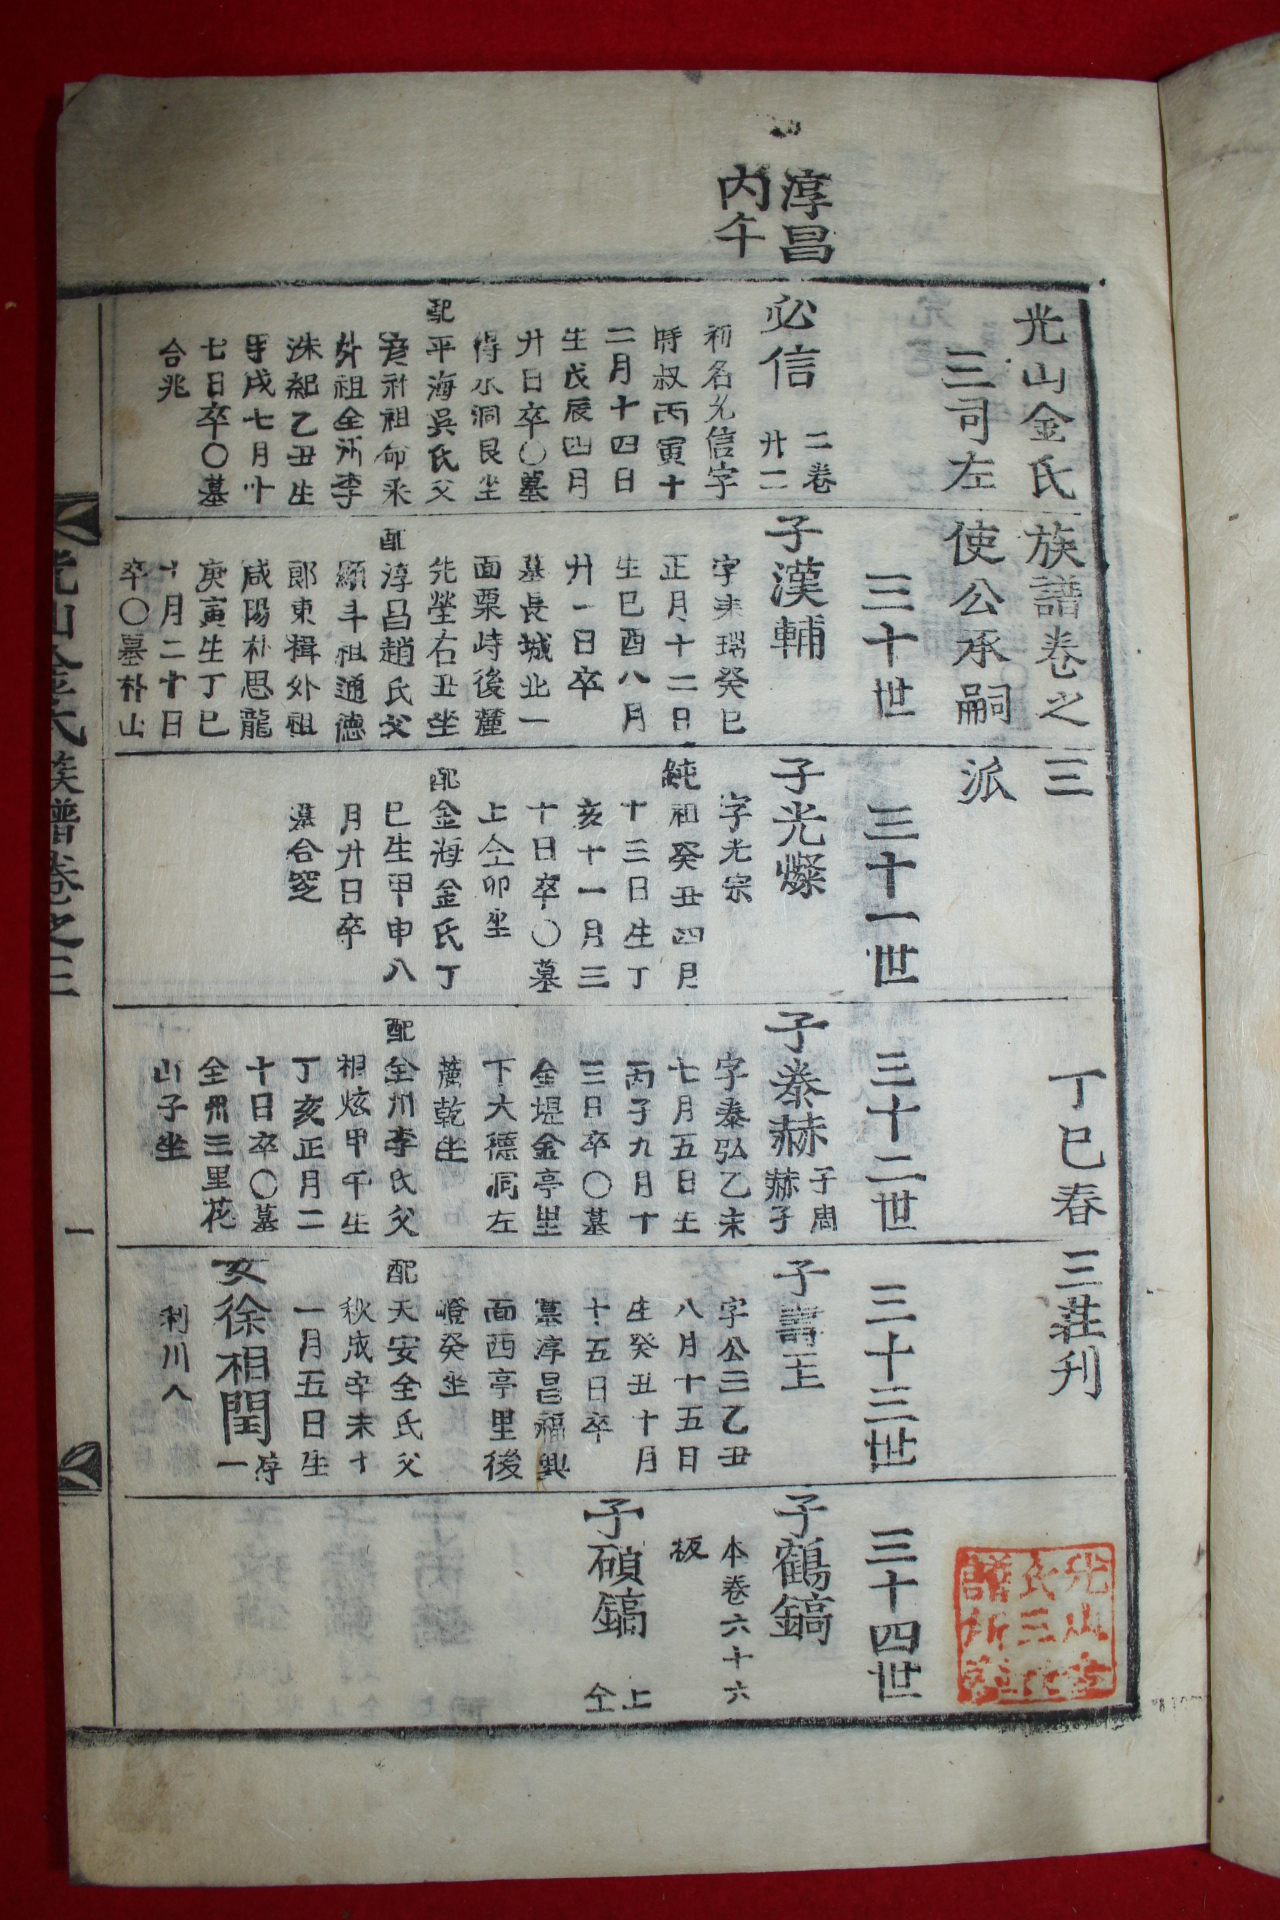 조선시대 목활자본 광산김씨족보(光山金氏族譜) 14책